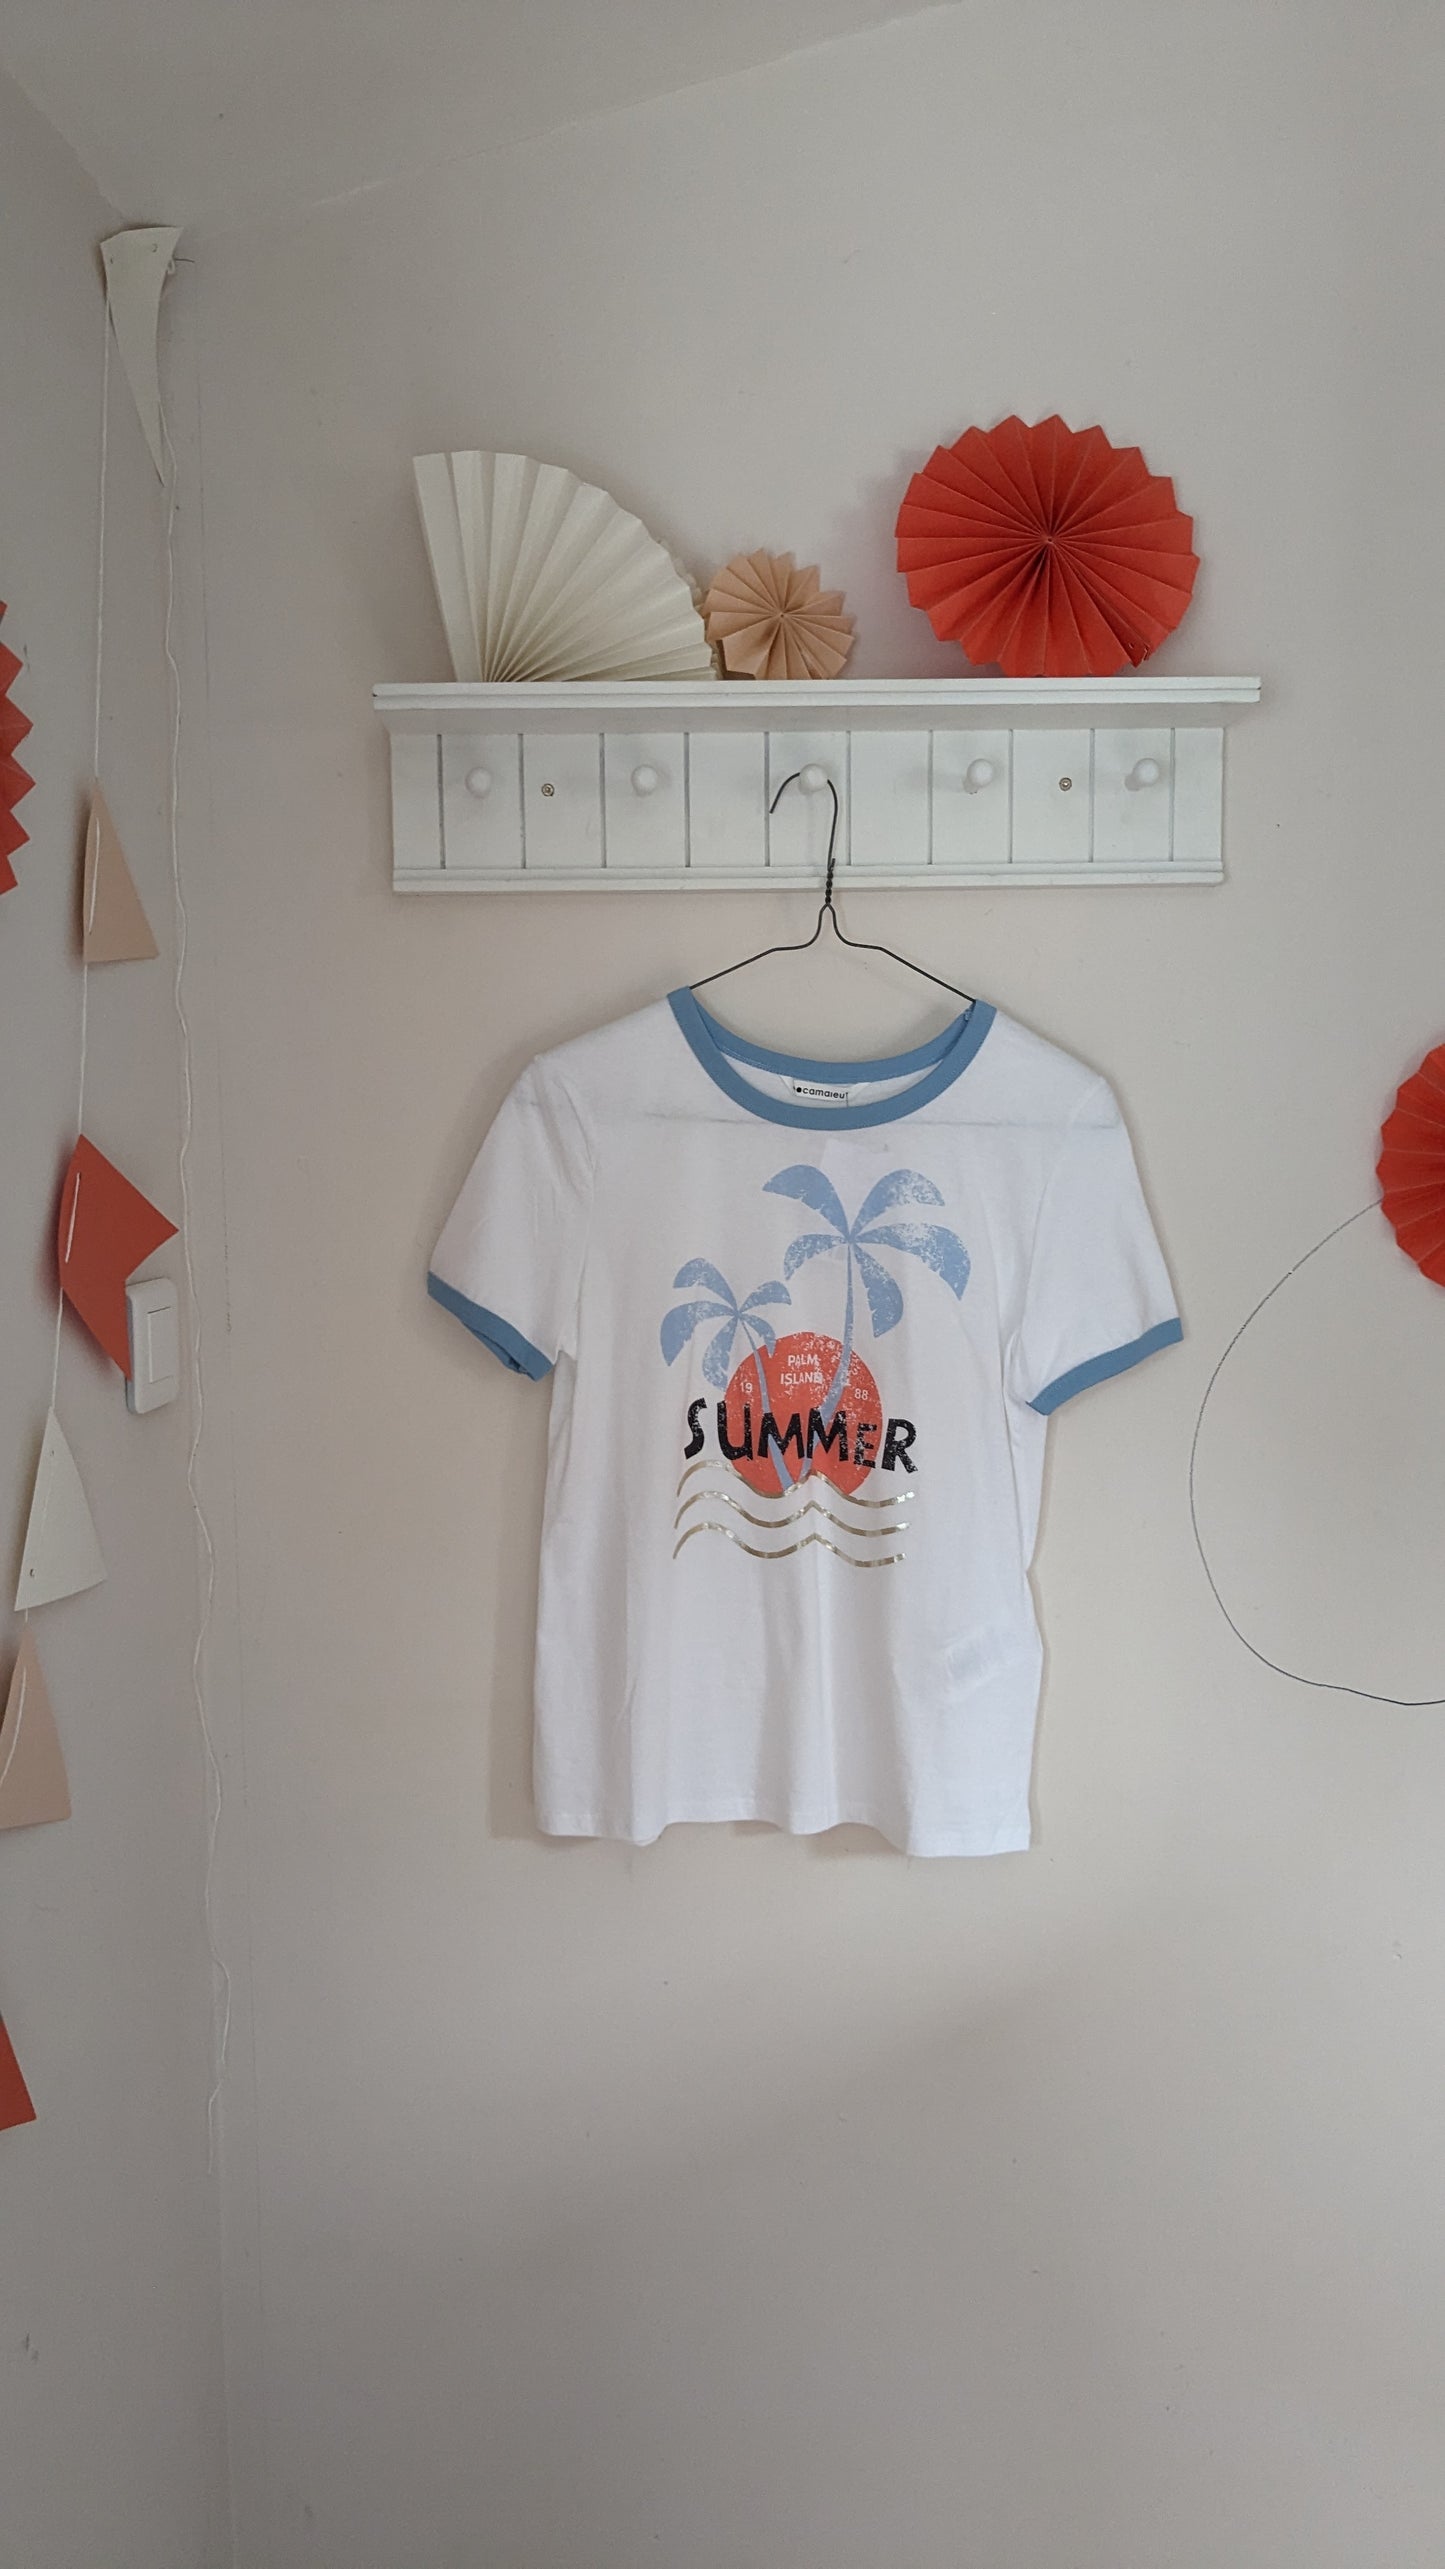 Neuf T-shirt summer - Camaïeu - 36